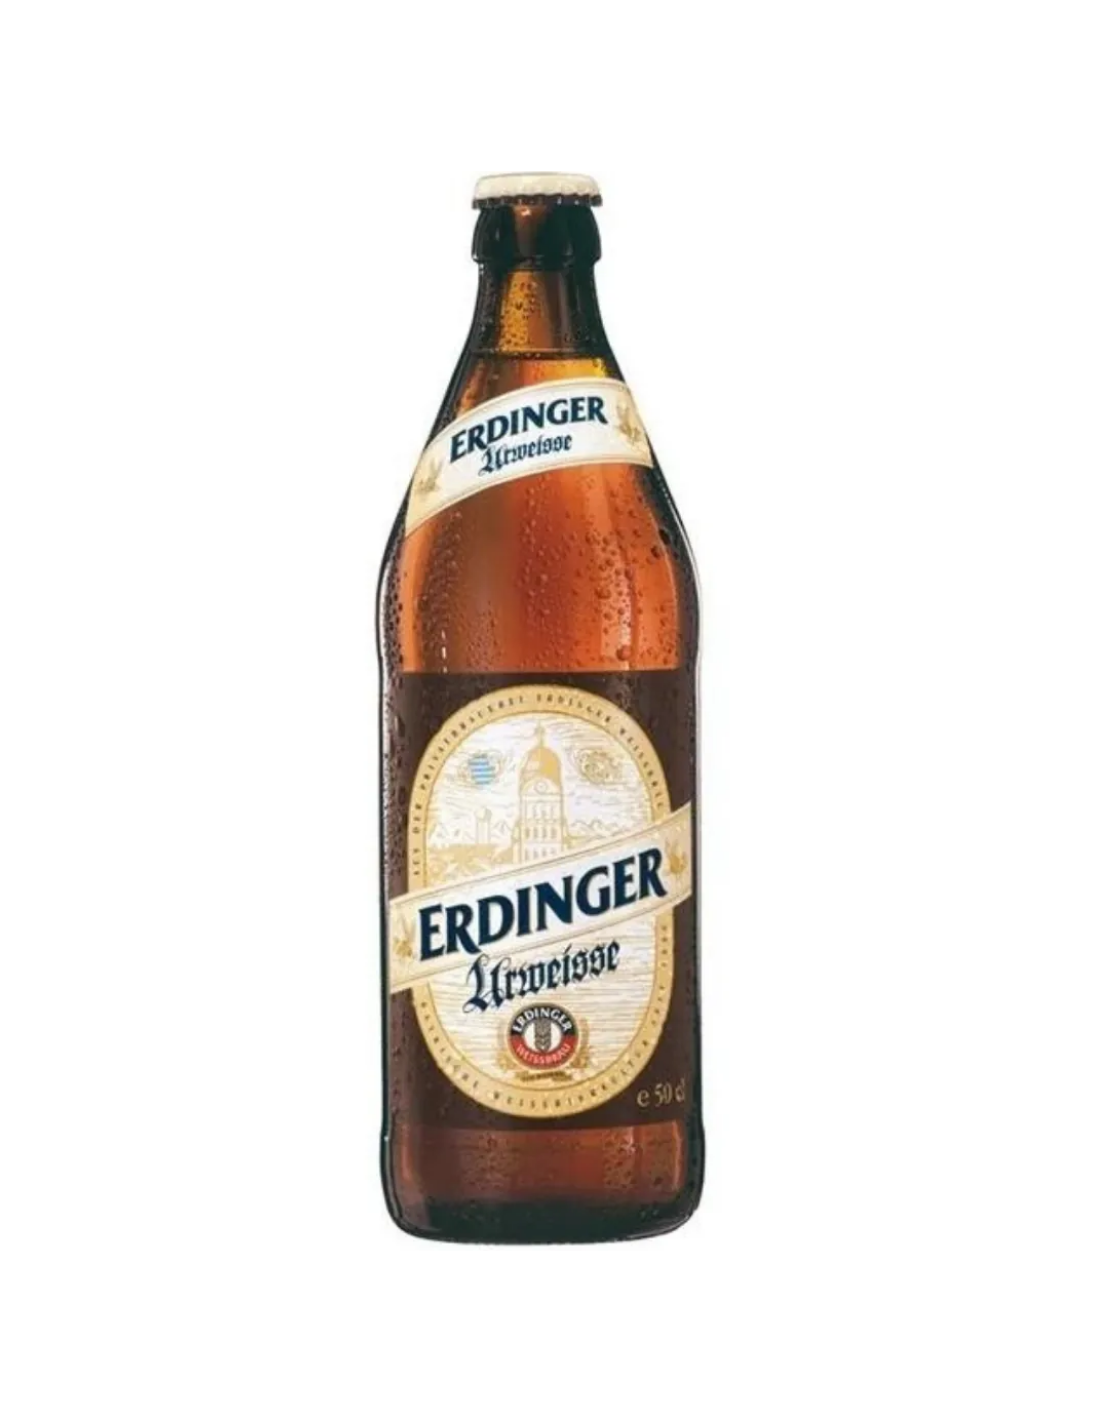 Bere blonda Erdinger Urweisse, 4.9% alc., 0.5L, Germania alcooldiscount.ro